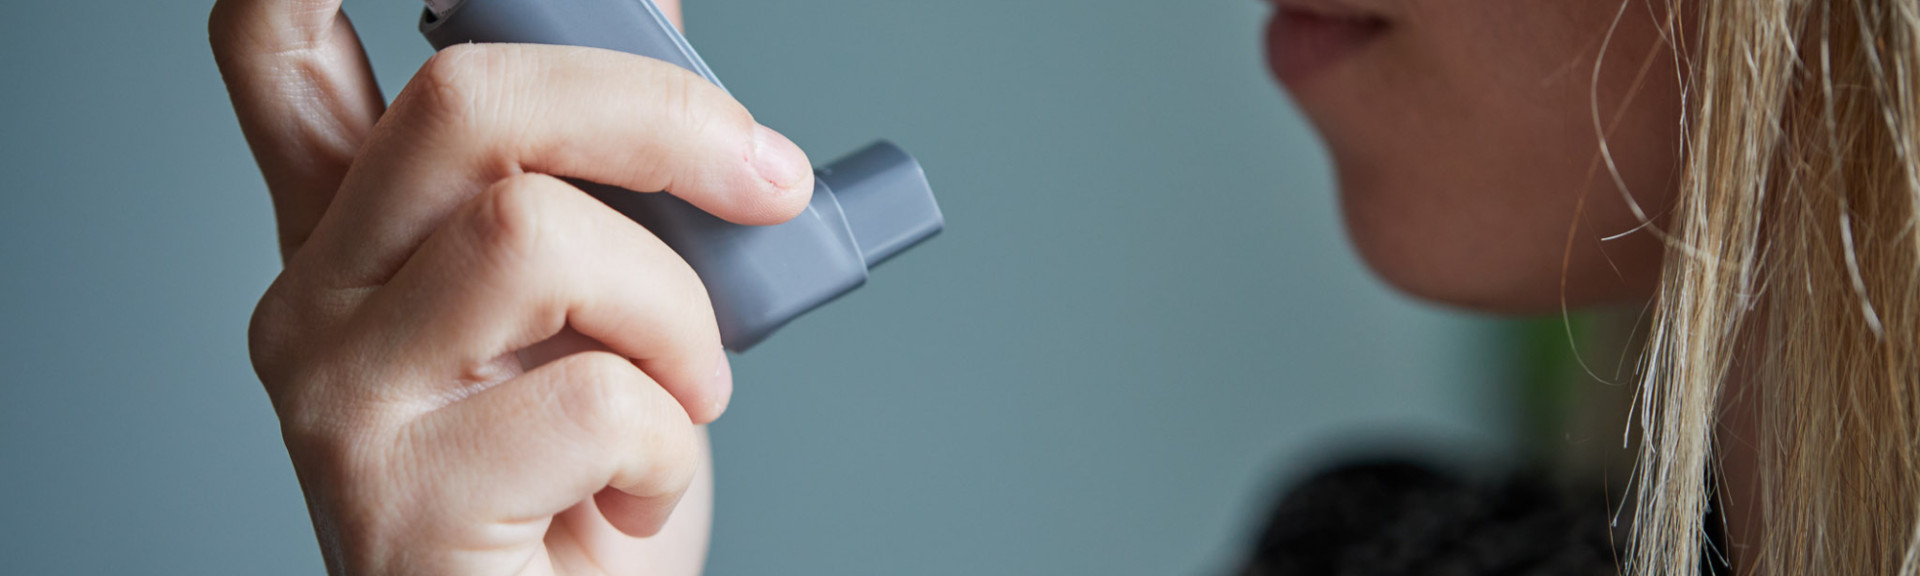 A photo showing an asthma inhaler